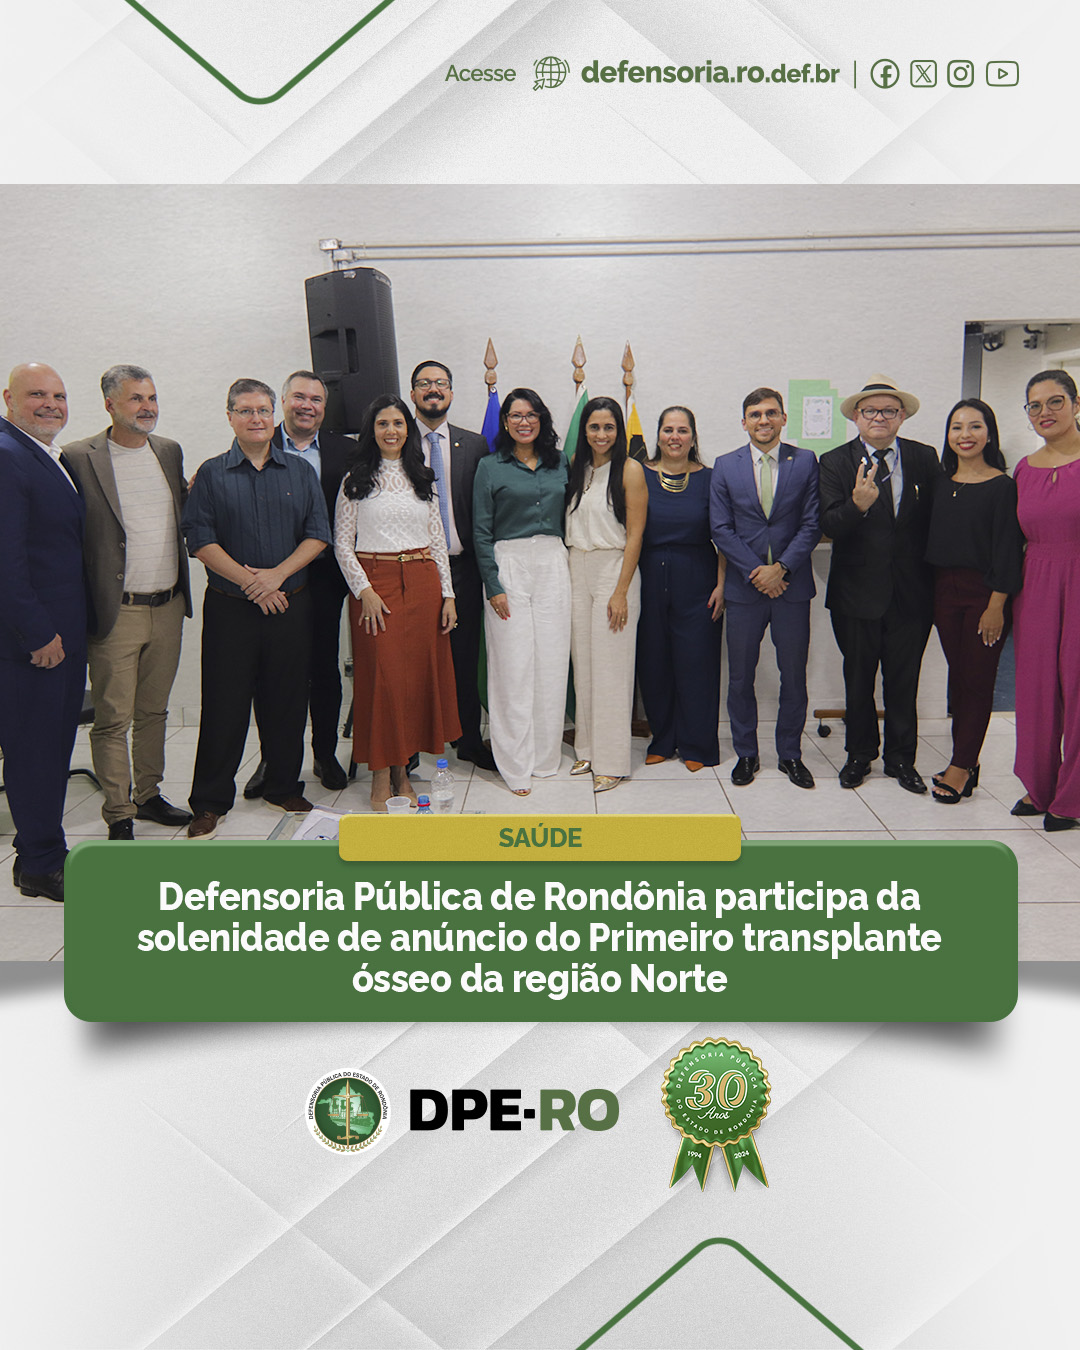 Saúde: Defensoria Pública de Rondônia participa da solenidade de anúncio do Primeiro transplante ósseo da região Norte